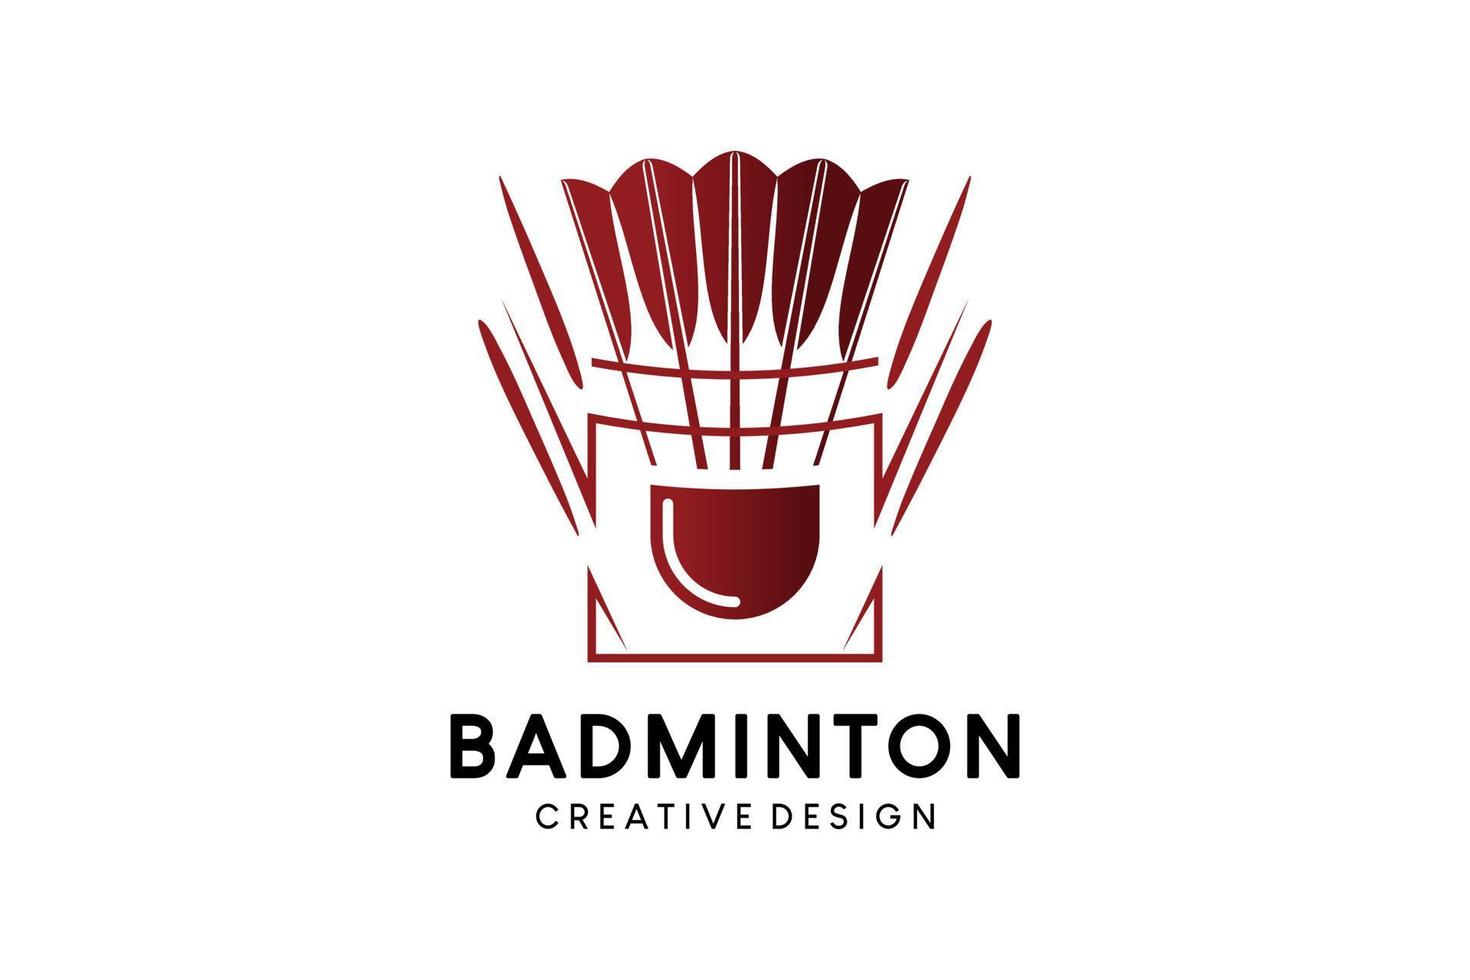 Badminton logo design with creative abstract feather shuttlecock silhouette vector